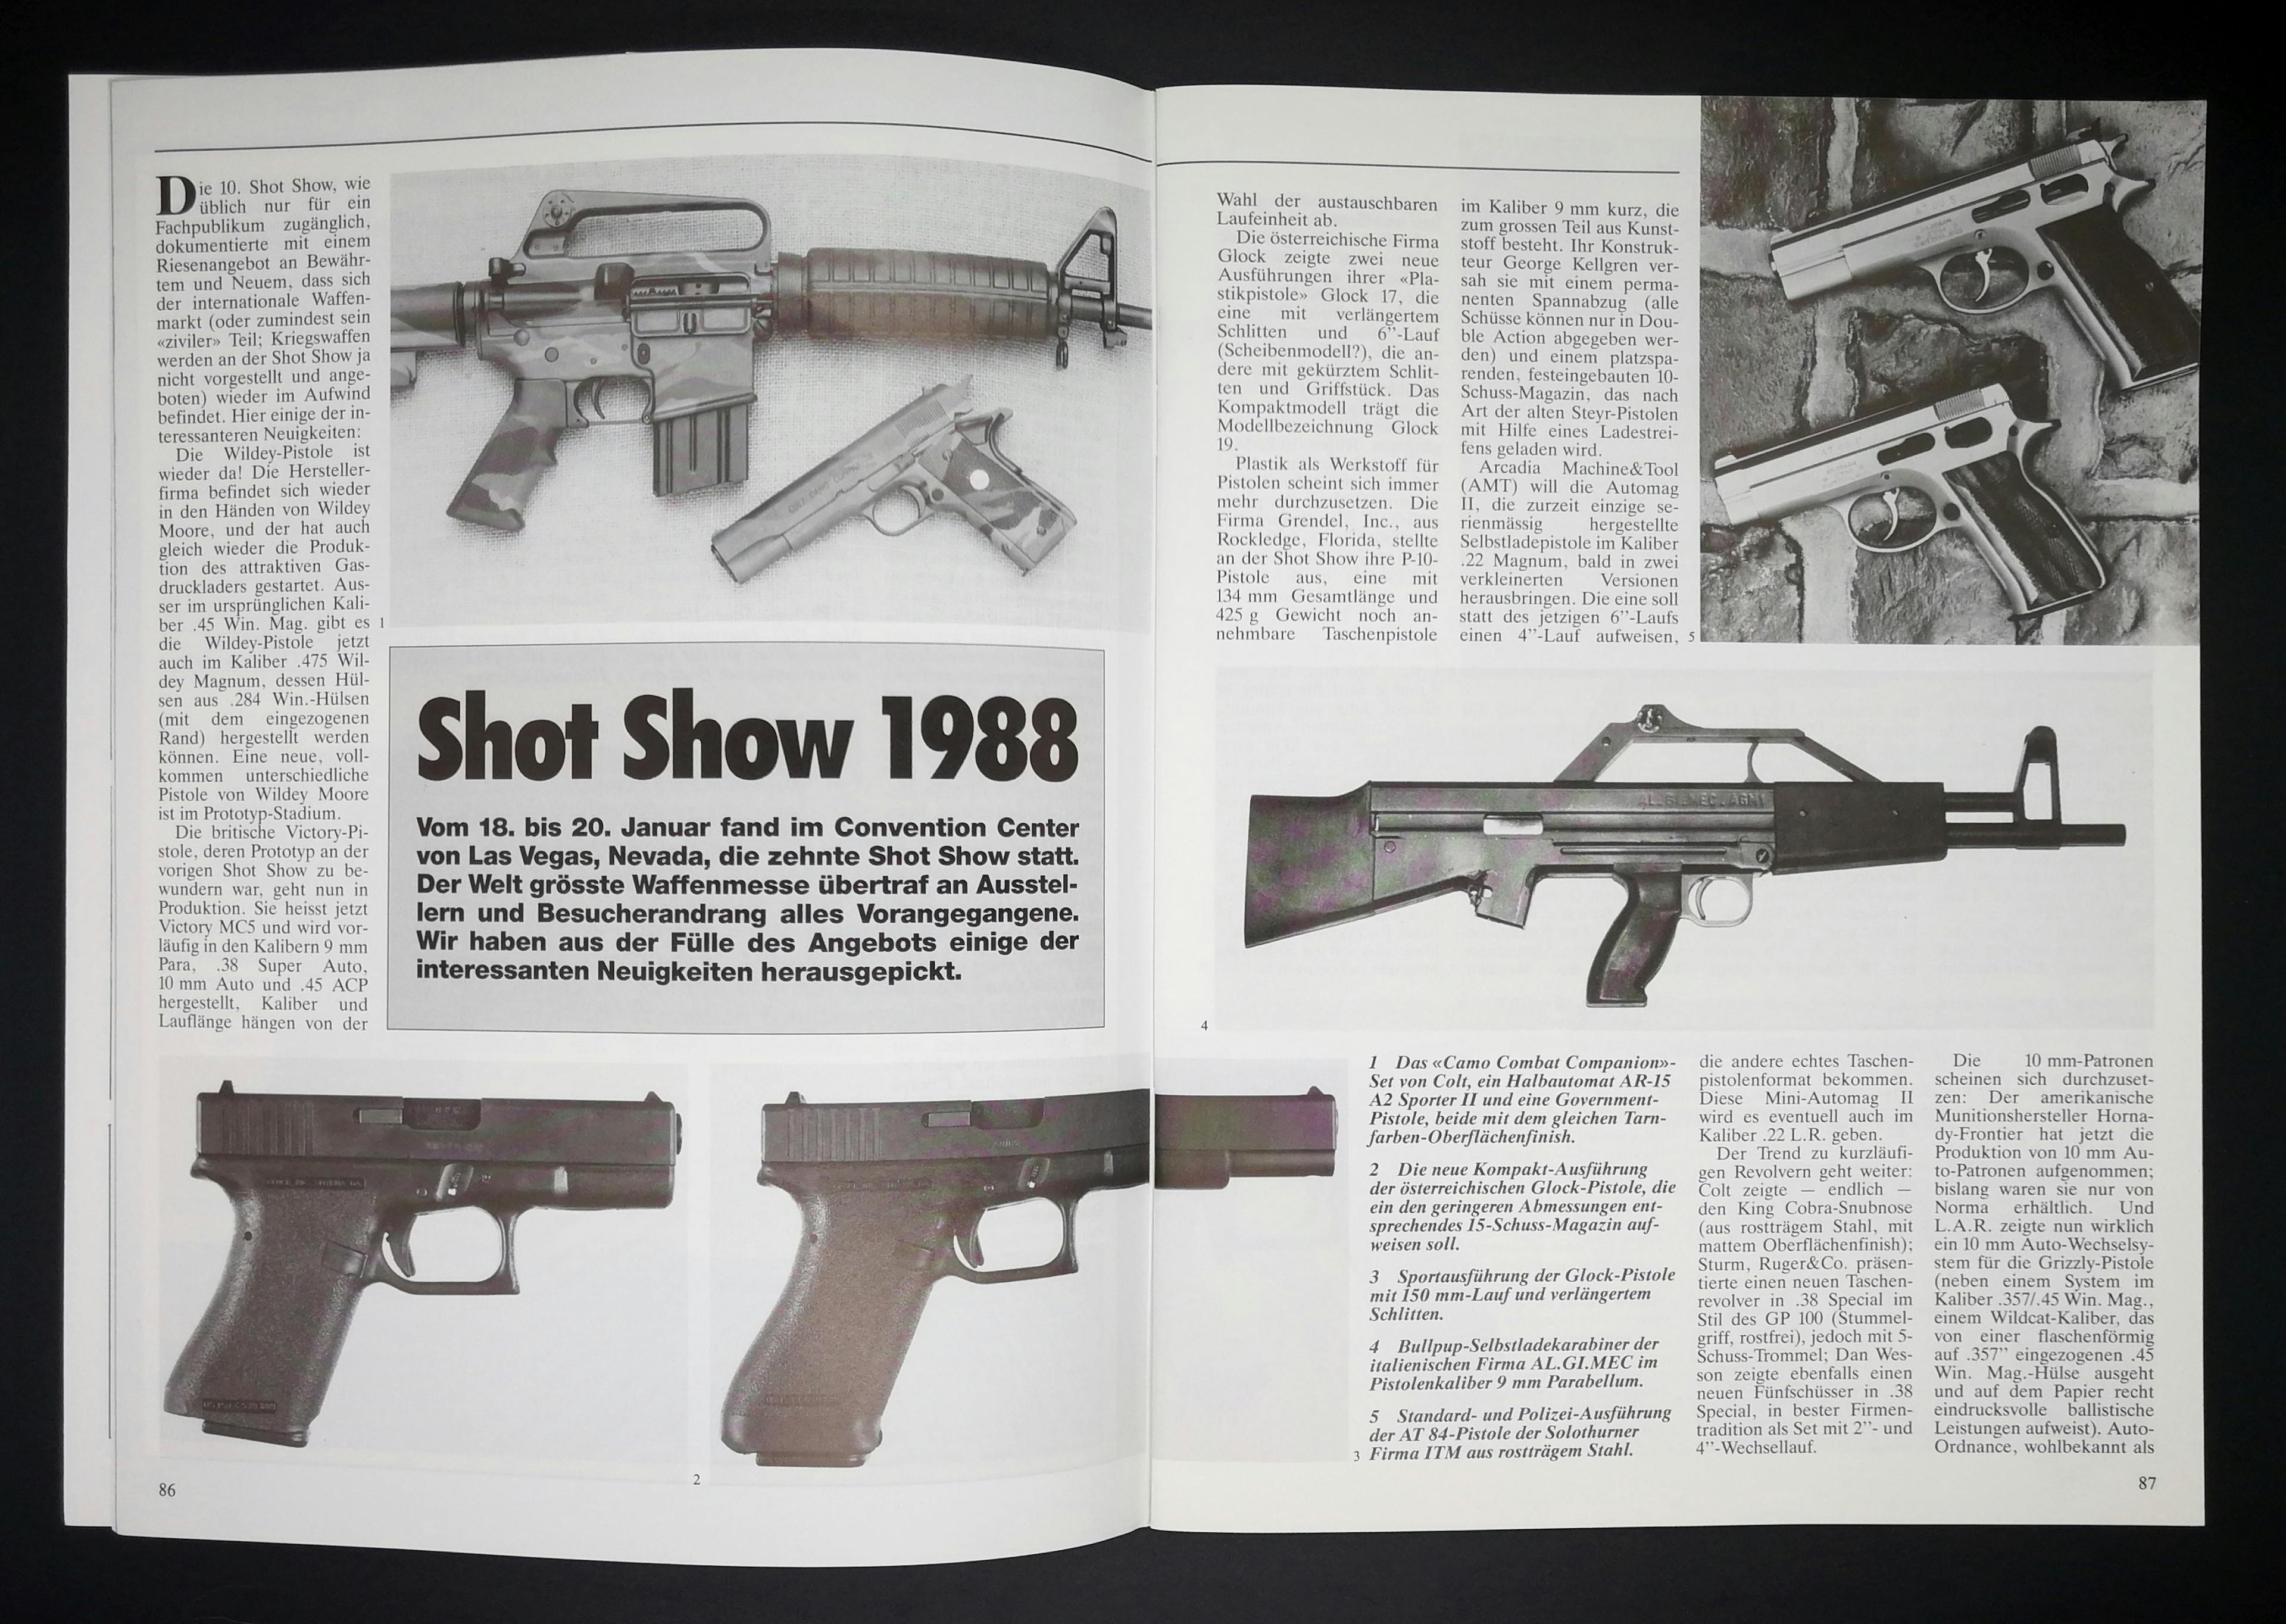 Die Shot Show war damals wie heute eine Institution. Neu waren damals unter anderem die Glock 19 , die Solothurner AT-84 und eine italienische Bullpup 9mm.
